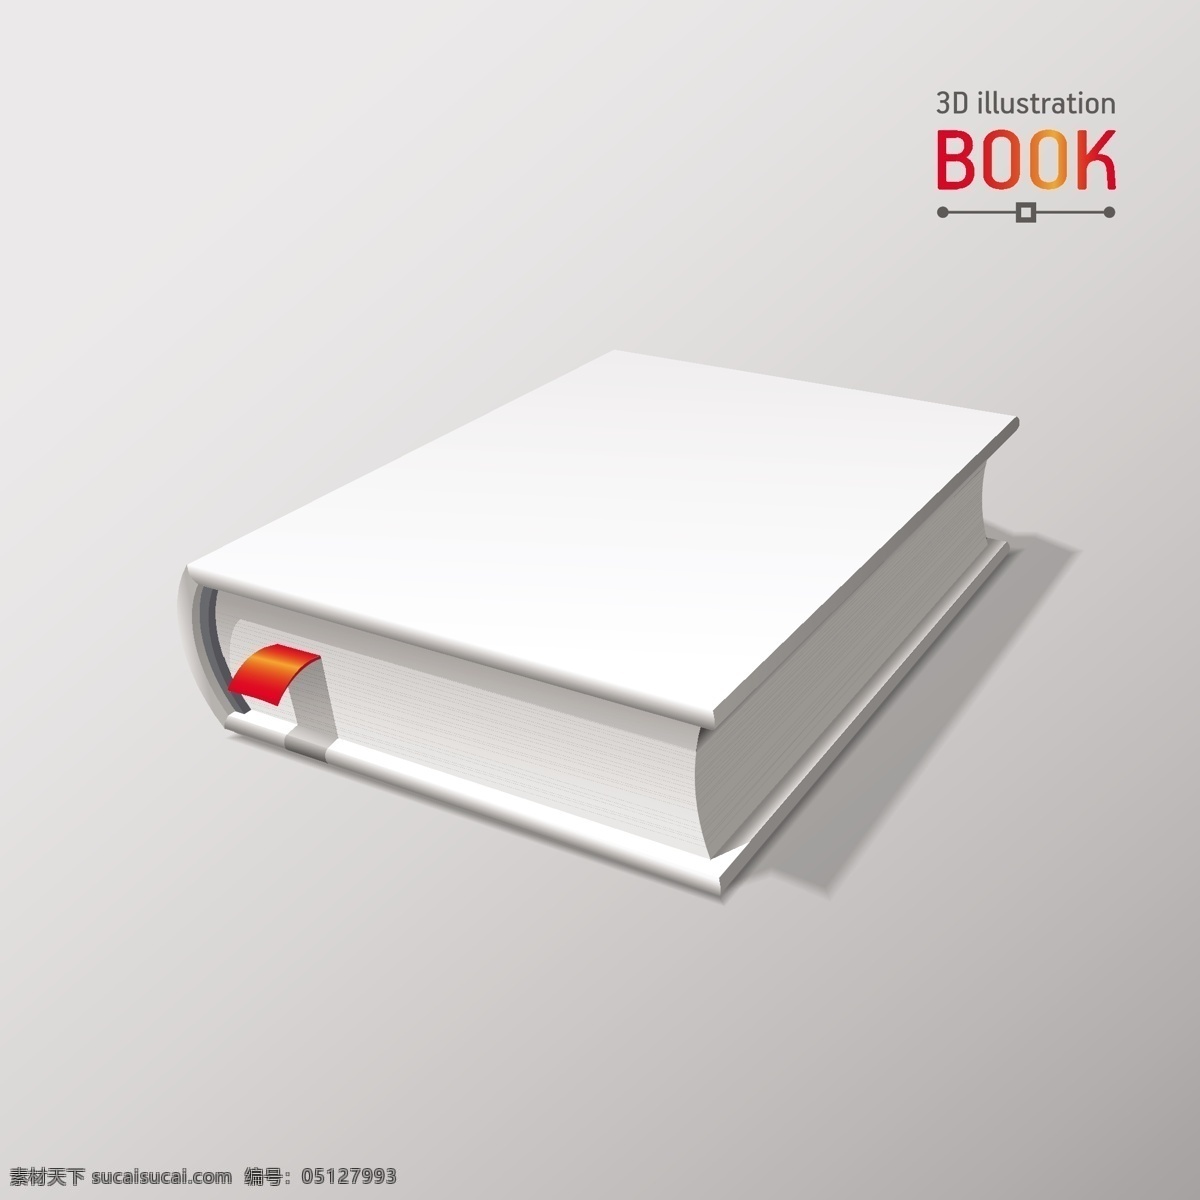 空白的书模型 模型 书 纸 盒 盖 3d 图书馆 阴影 白色 页 小册子 灰色的对象 文学的空白 空的 前面 模拟 渲染 精装